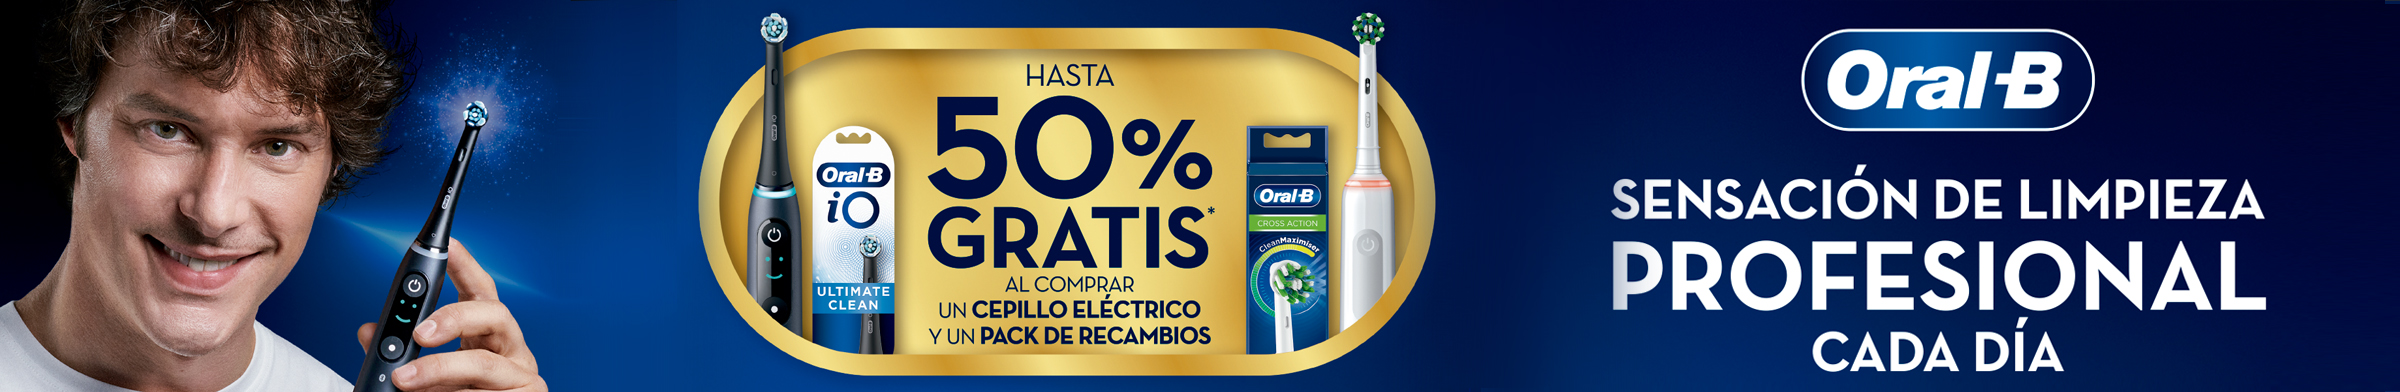 Promo Oral-B: Hasta 50% GRATIS en tu CEPILLO + RECAMBIOS